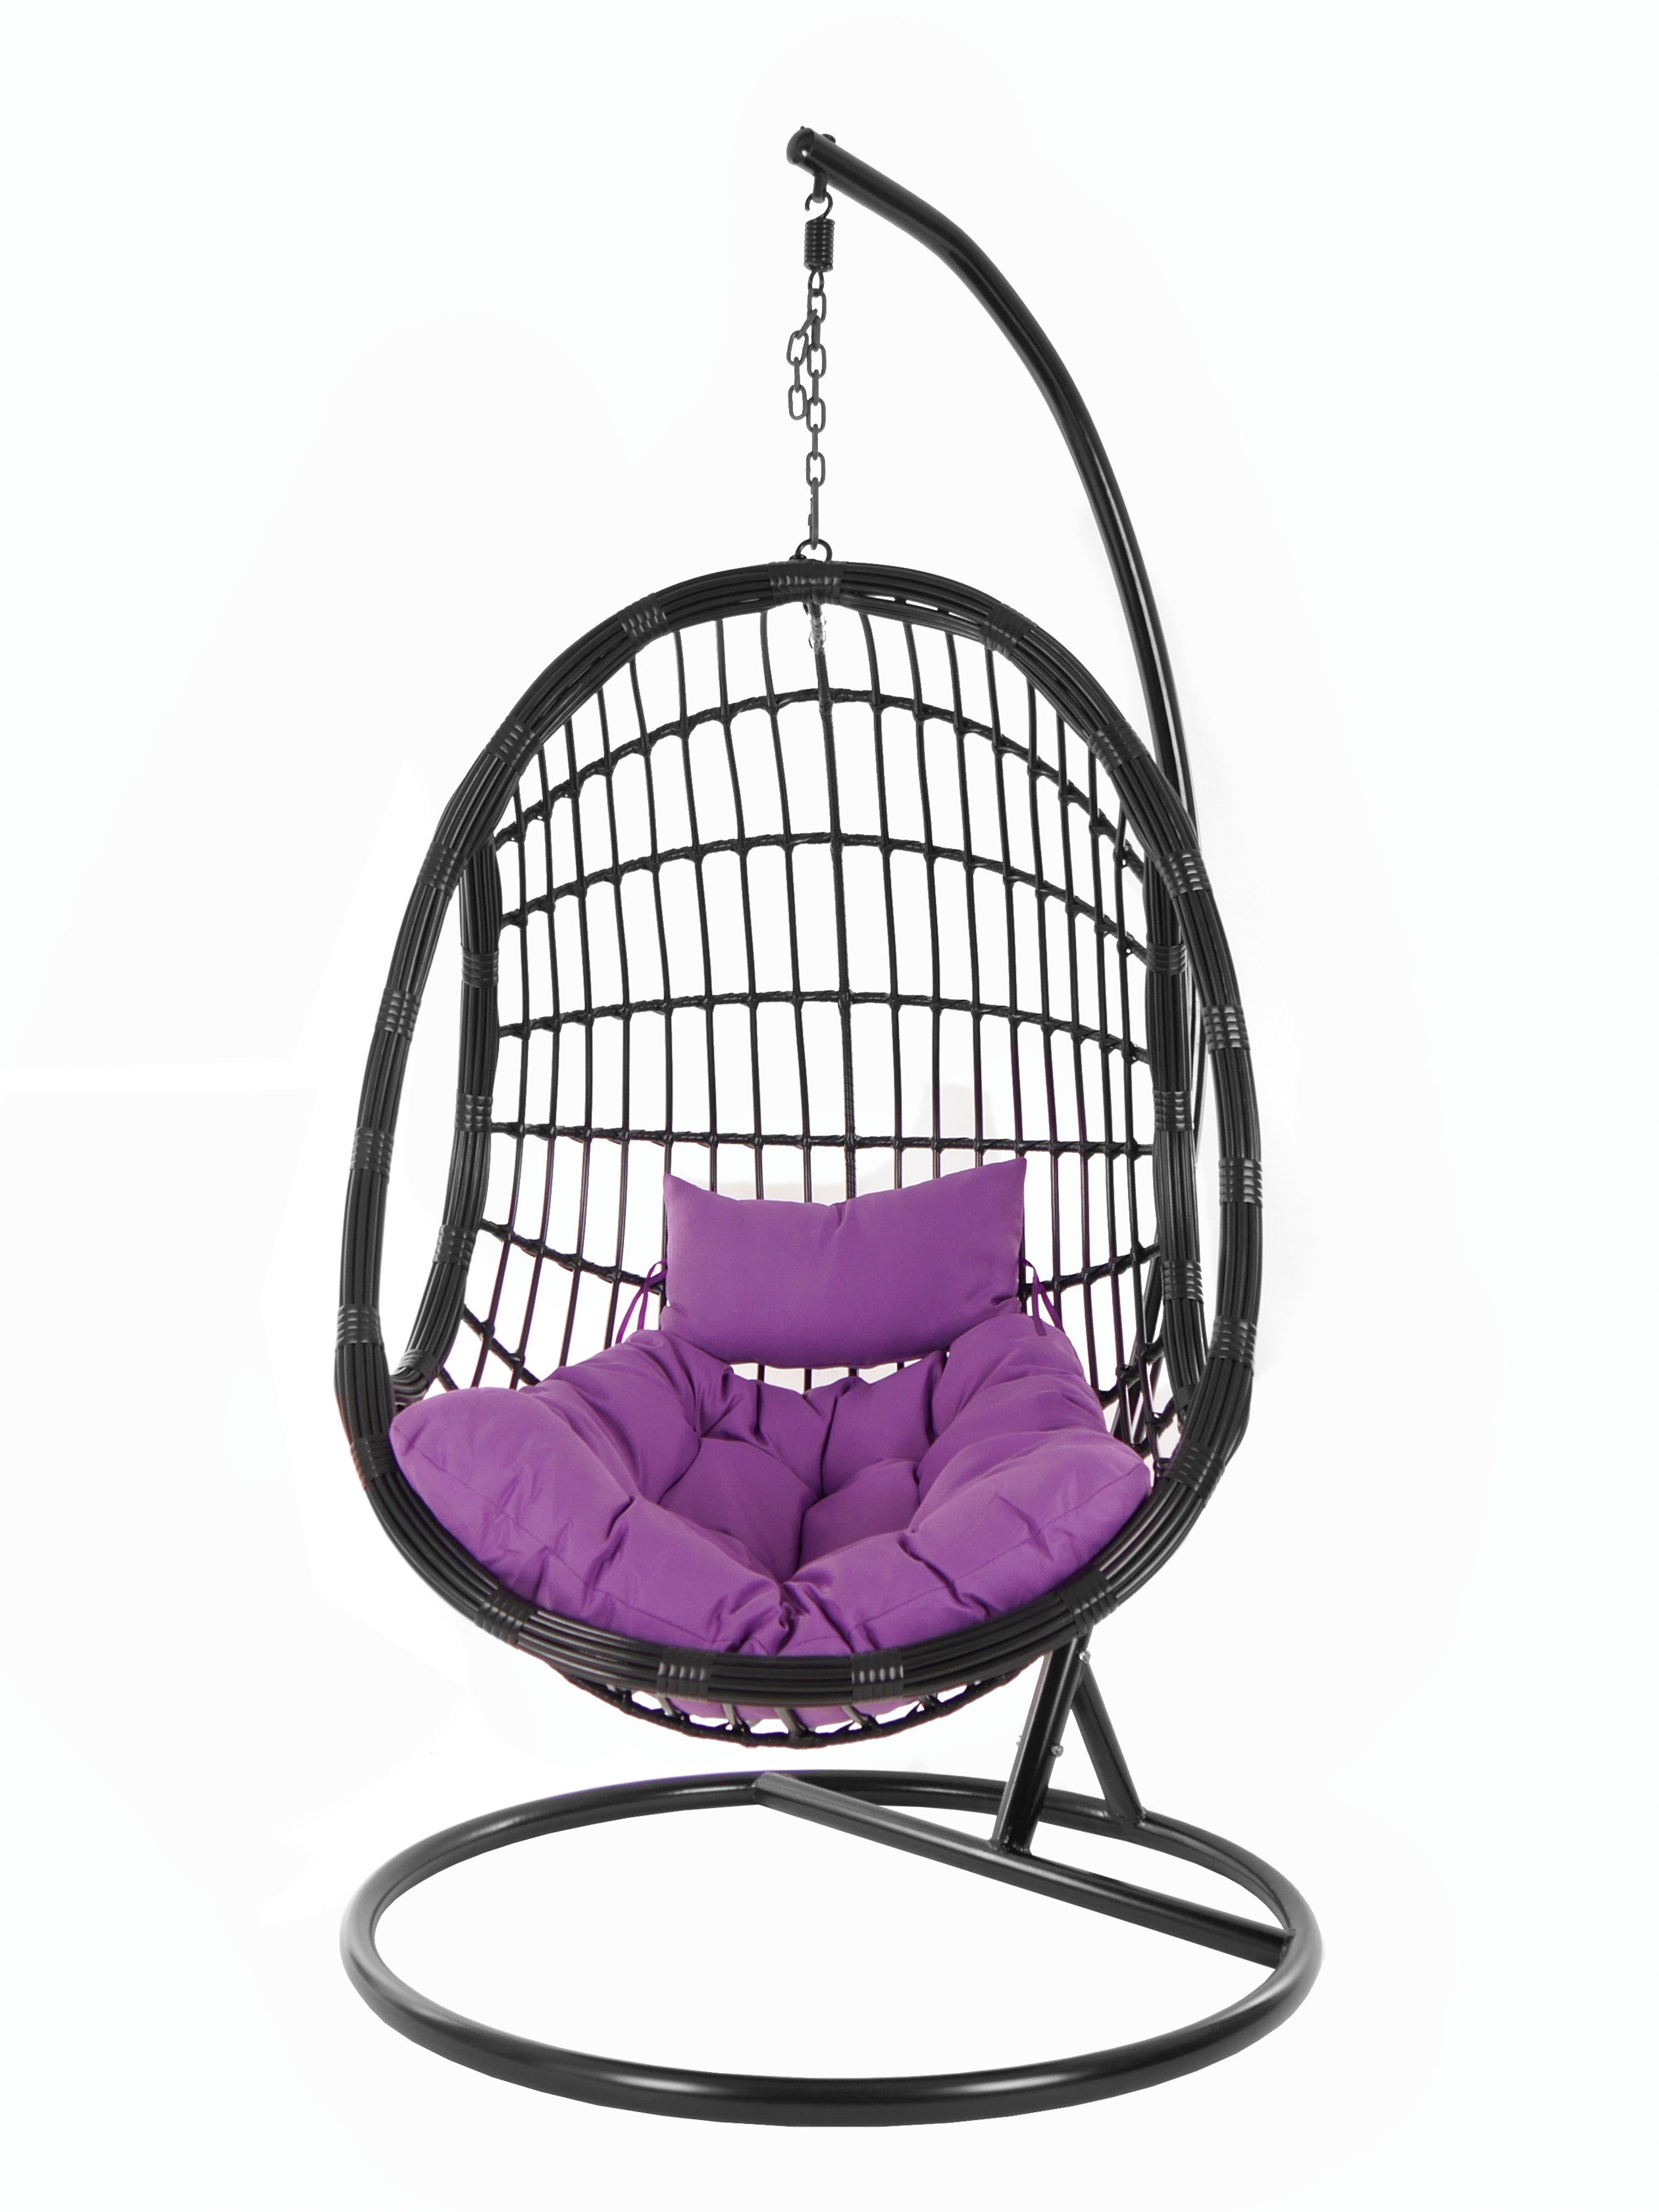 black, schwarz, mit edles Design und Chair, KIDEO Hängesessel Swing Schwebesessel, Kissen, PALMANOVA (4050 Loungemöbel, violet) Hängesessel Gestell lila